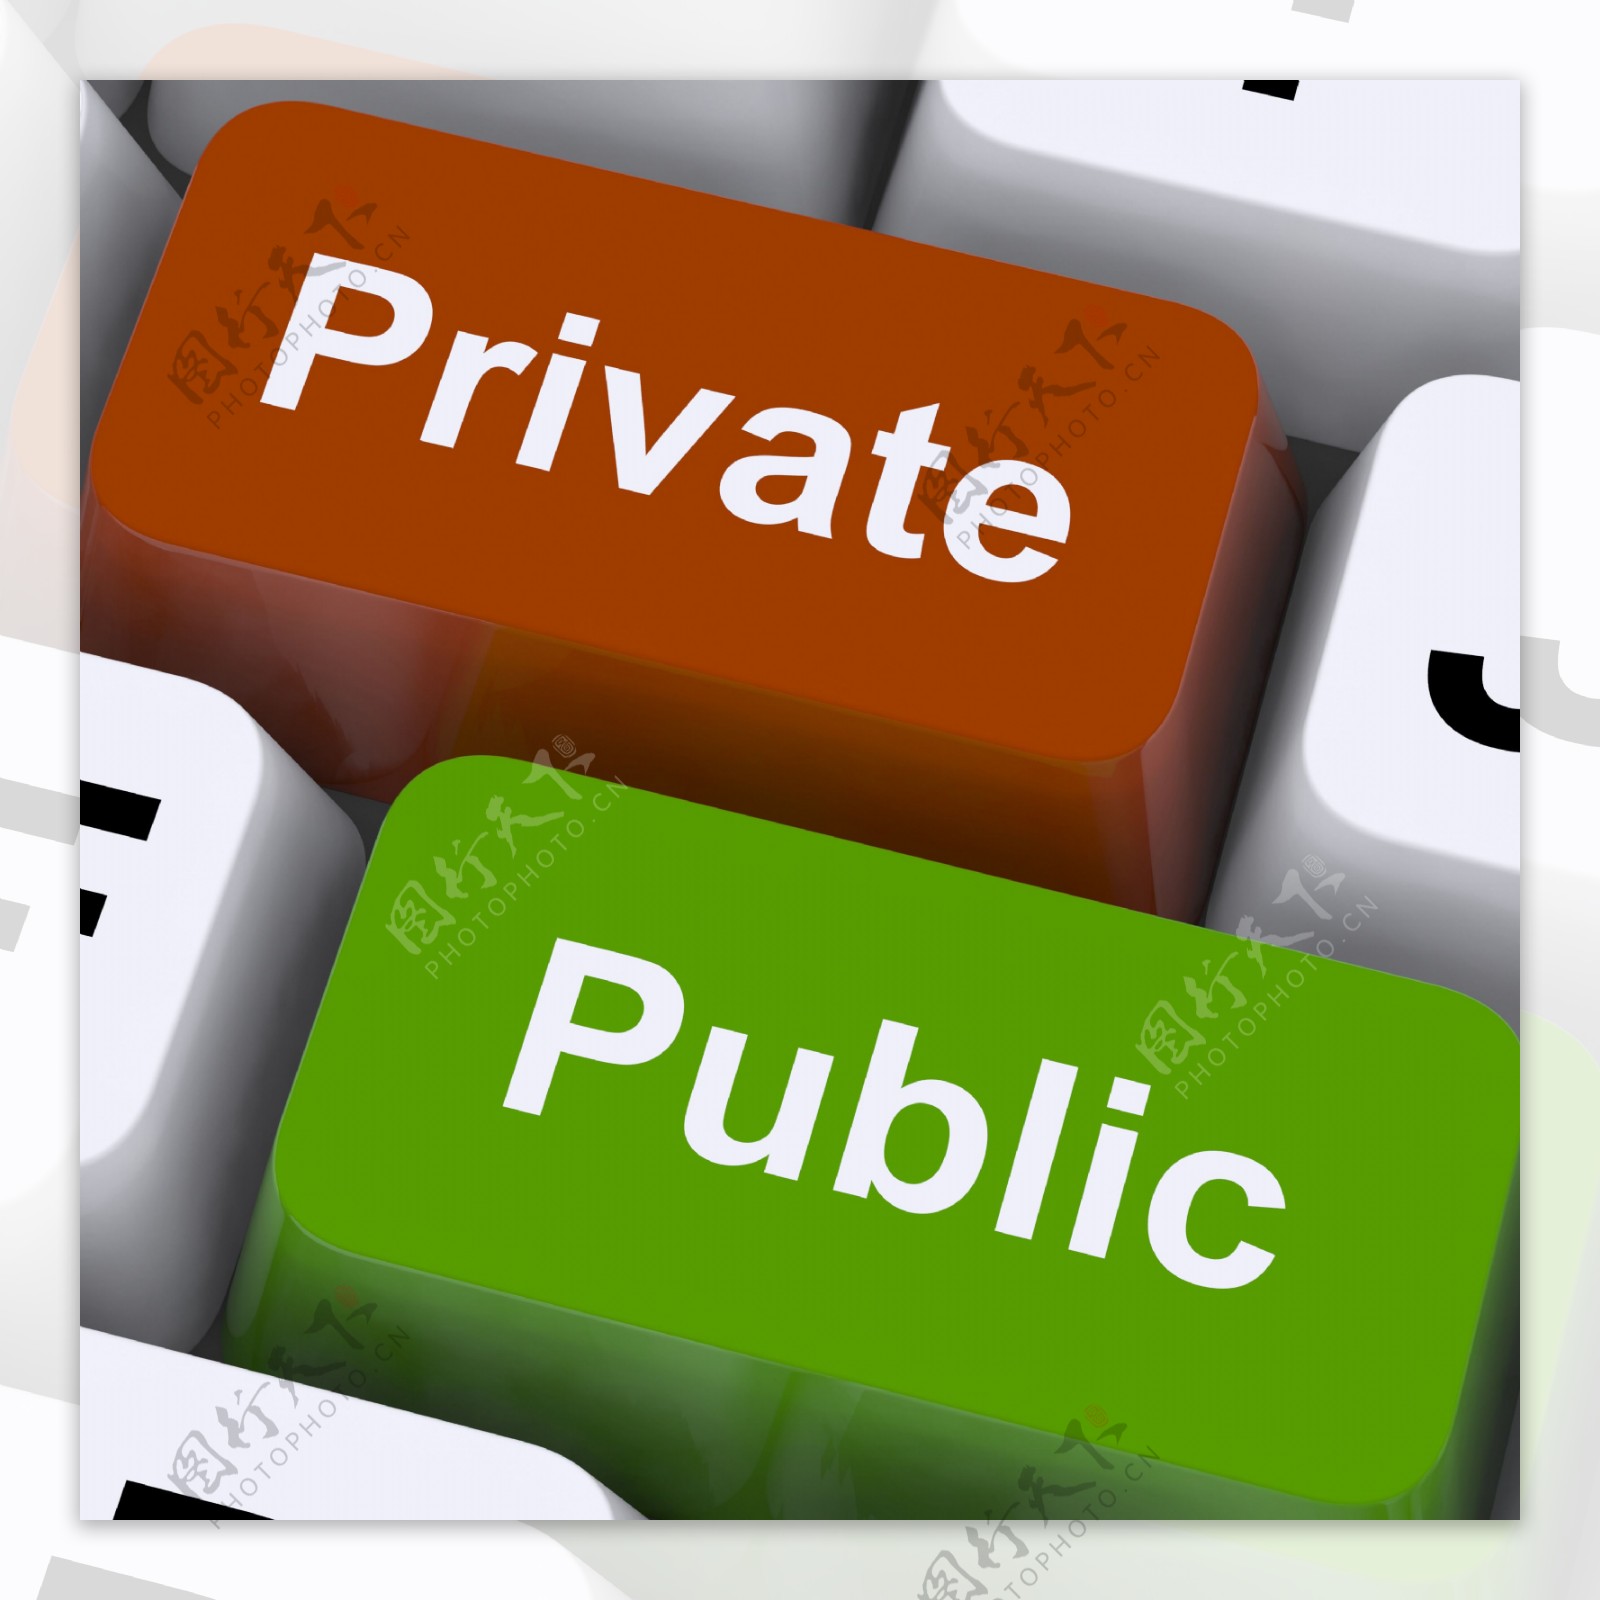 私人或公共的一个键盘上的键